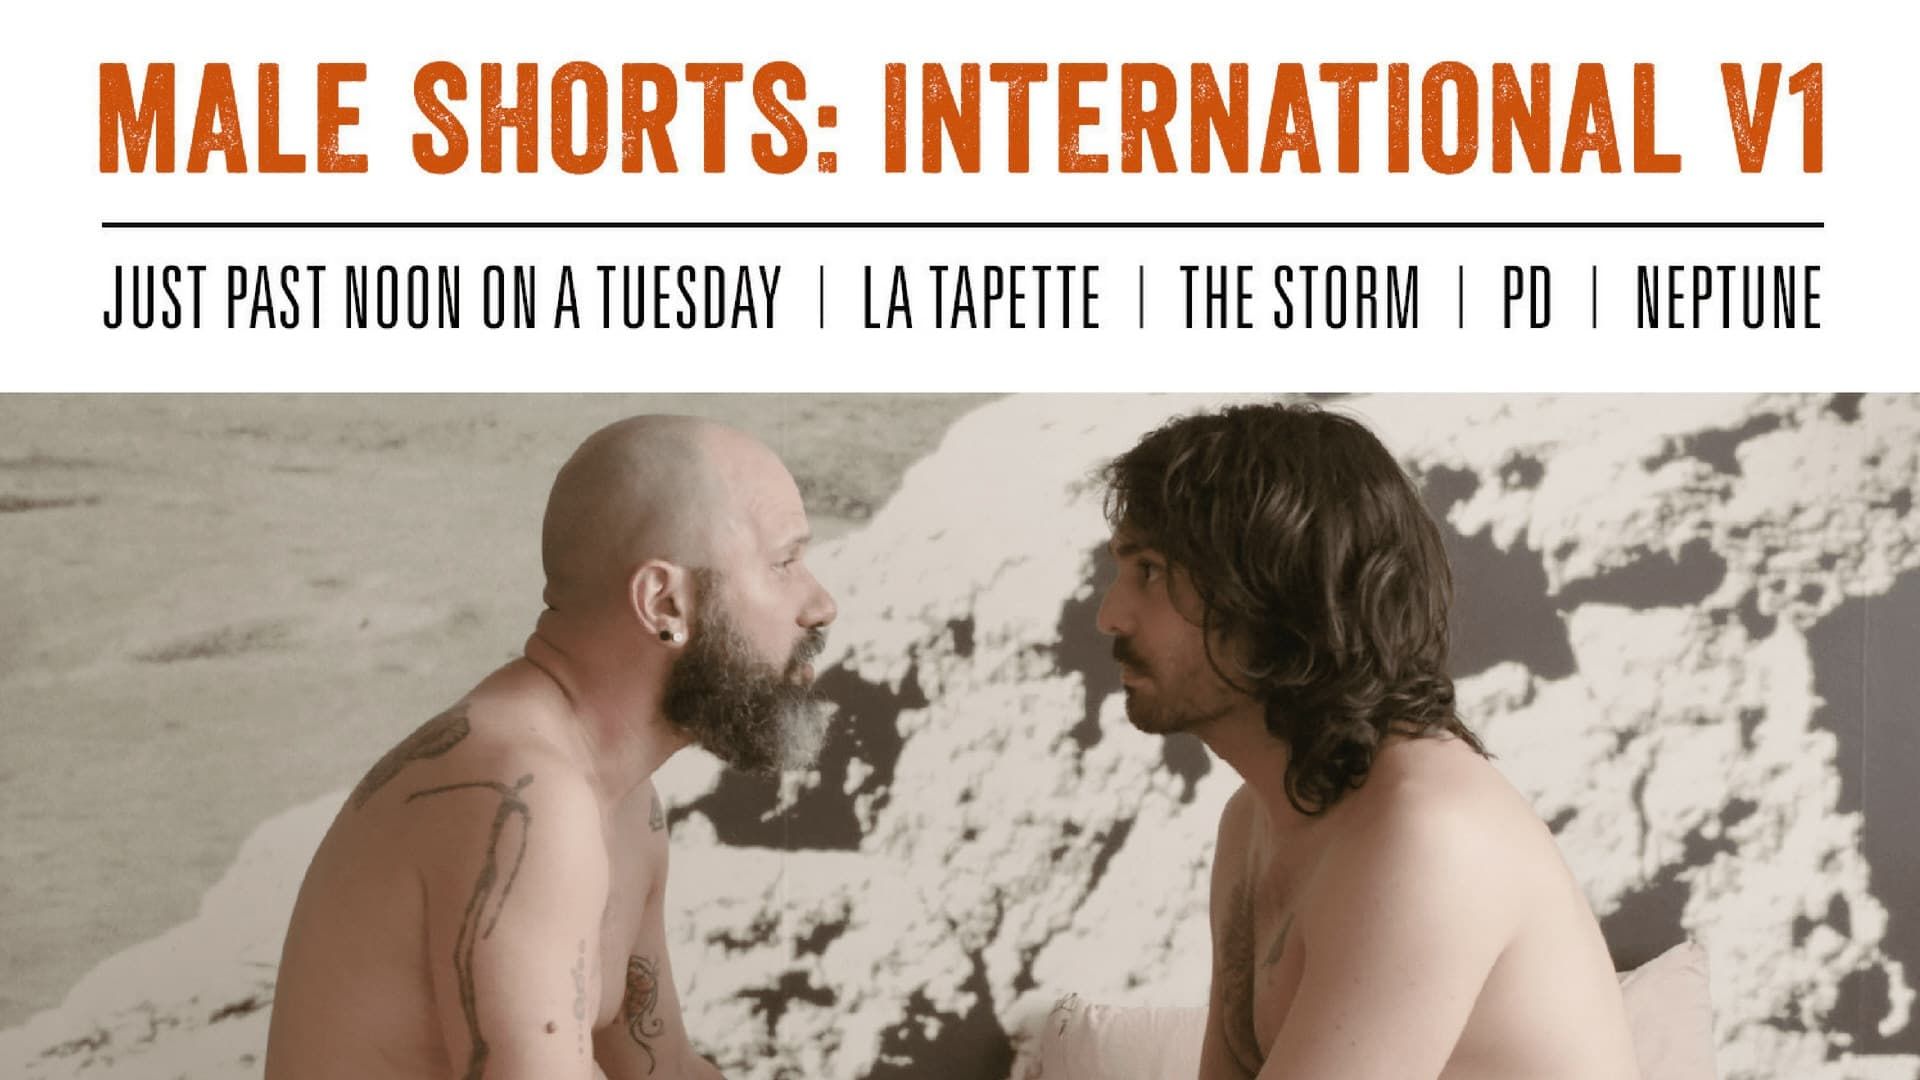 Male Shorts International V1 background